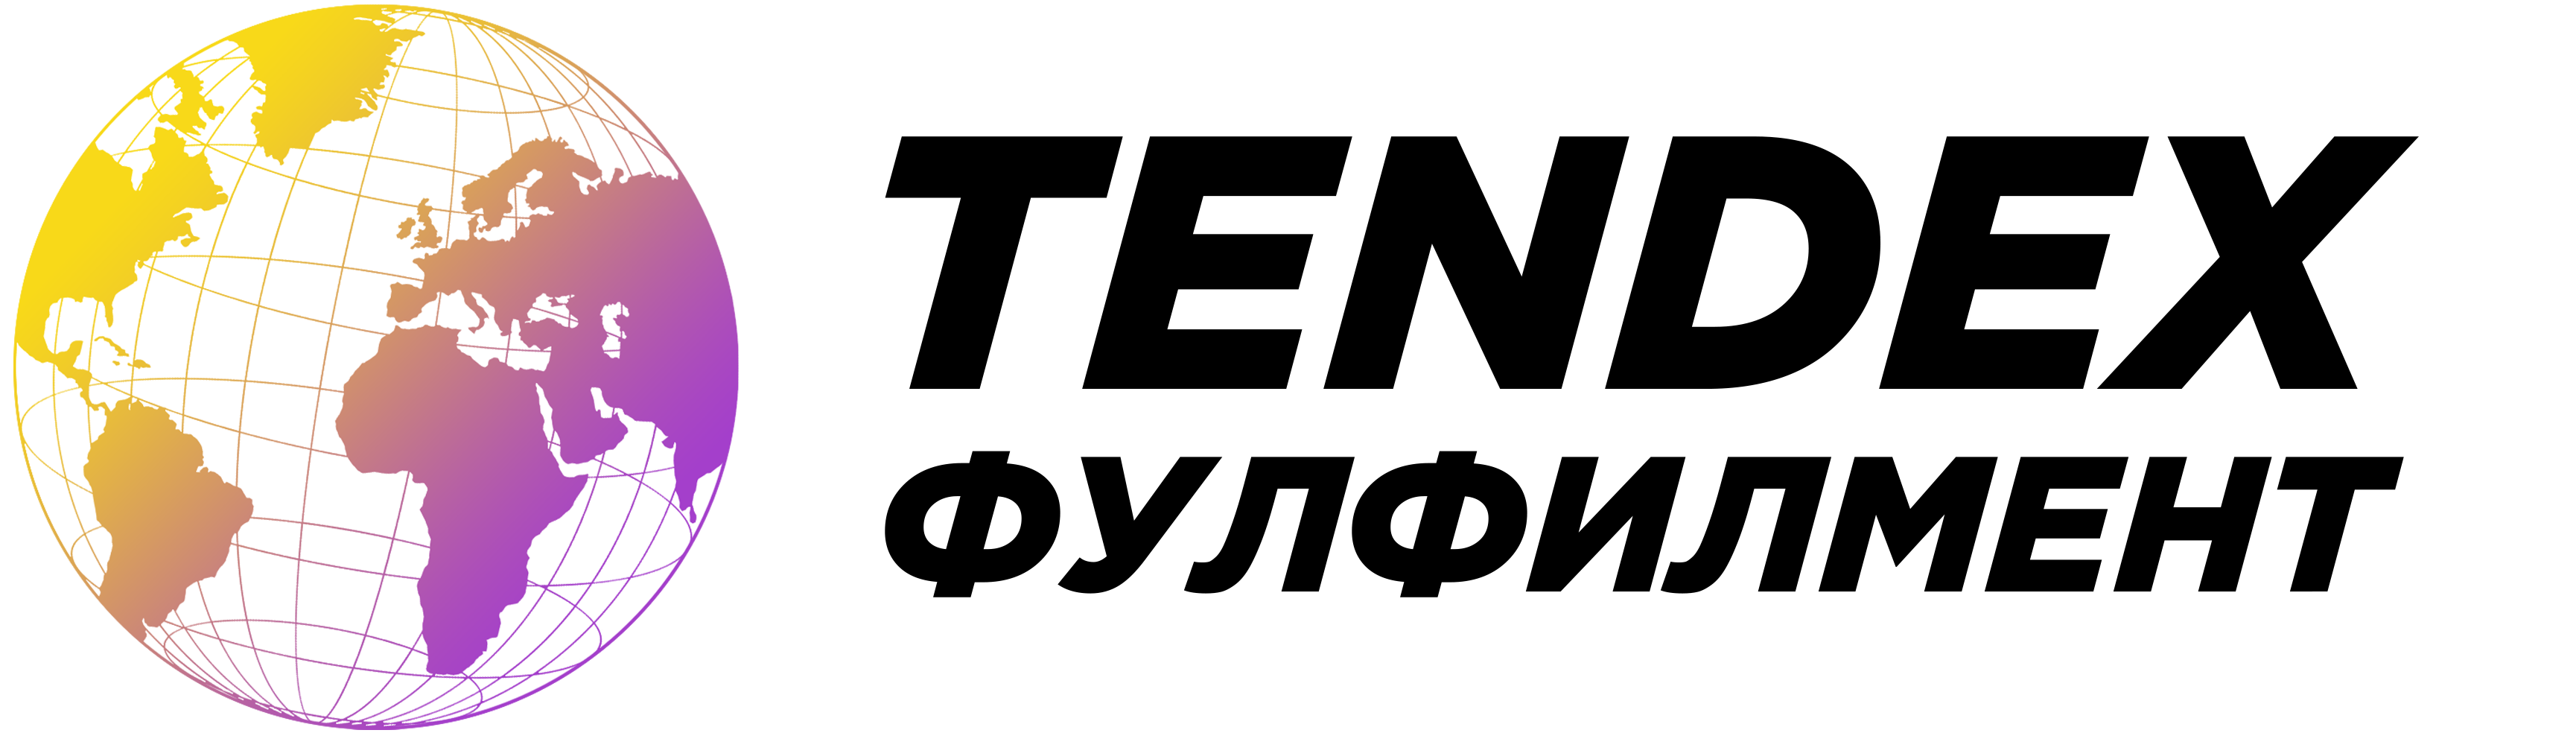 Логотип TENDEX